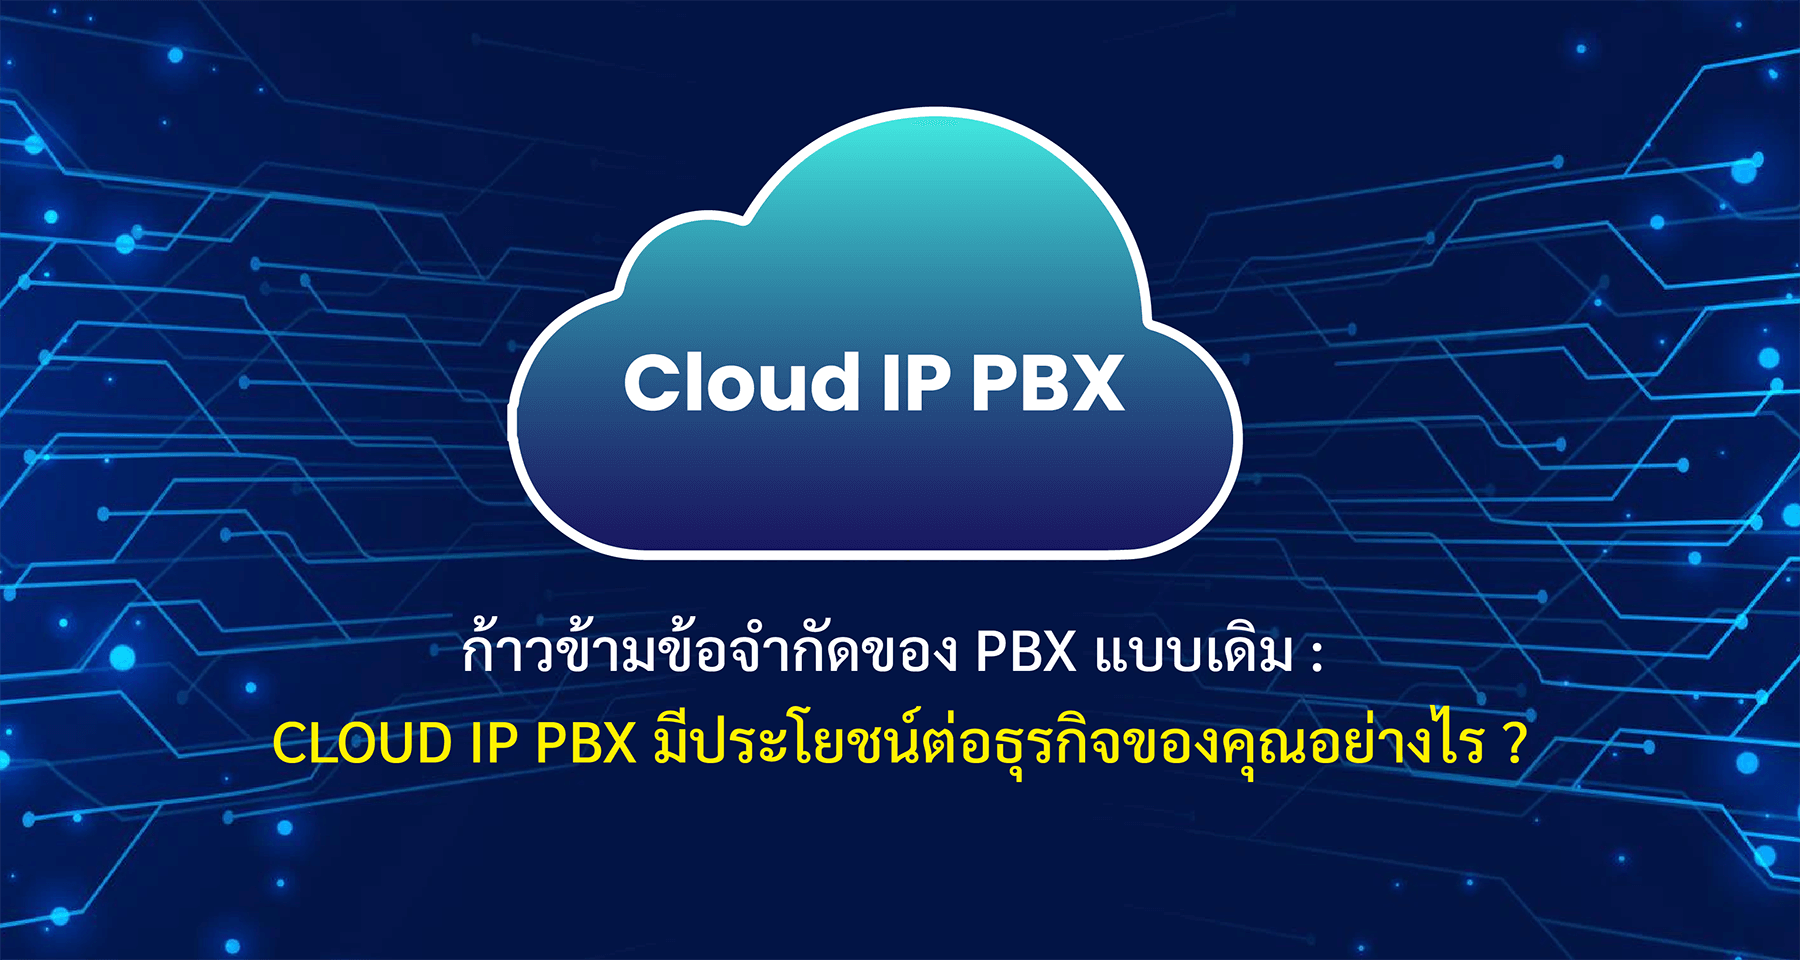 ก้าวข้ามข้อจำกัดของ PBX แบบเดิม : Cloud IP PBX มีประโยชน์ต่อธุรกิจของคุณอย่างไร ?